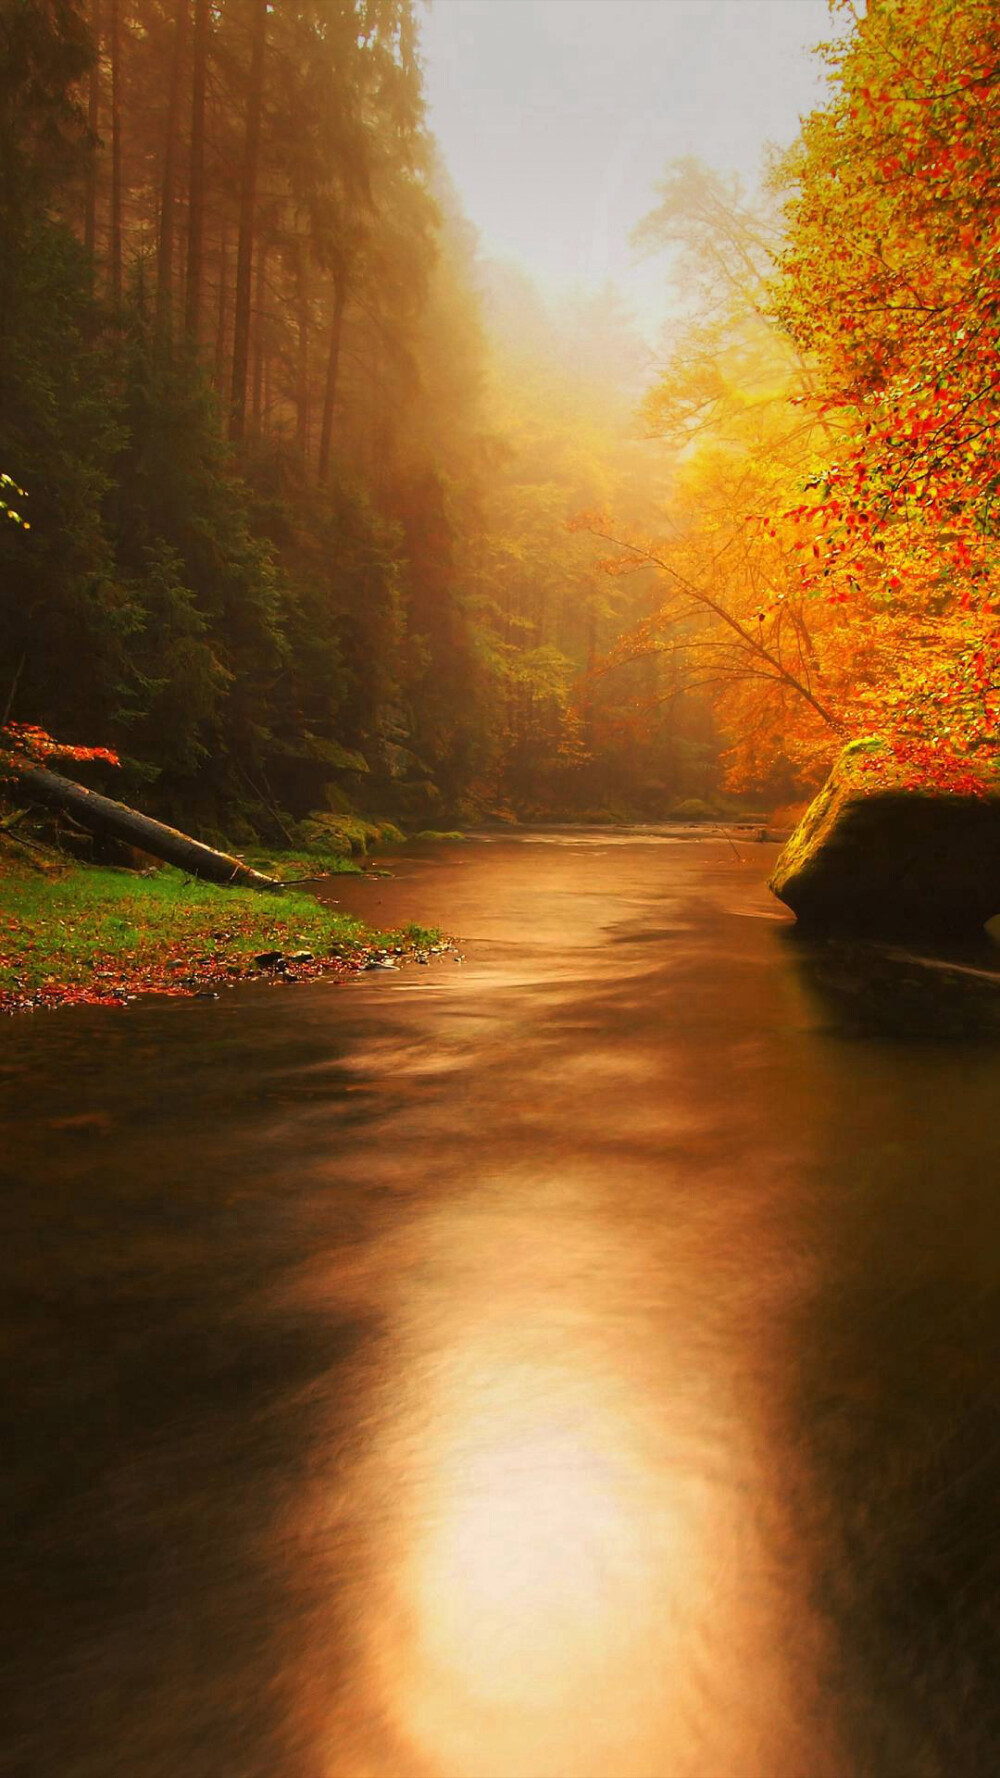 【丛林幽静】
秋日的森林，湖平叶静，一片寂静，好像在预示着暴风雪的来临。'